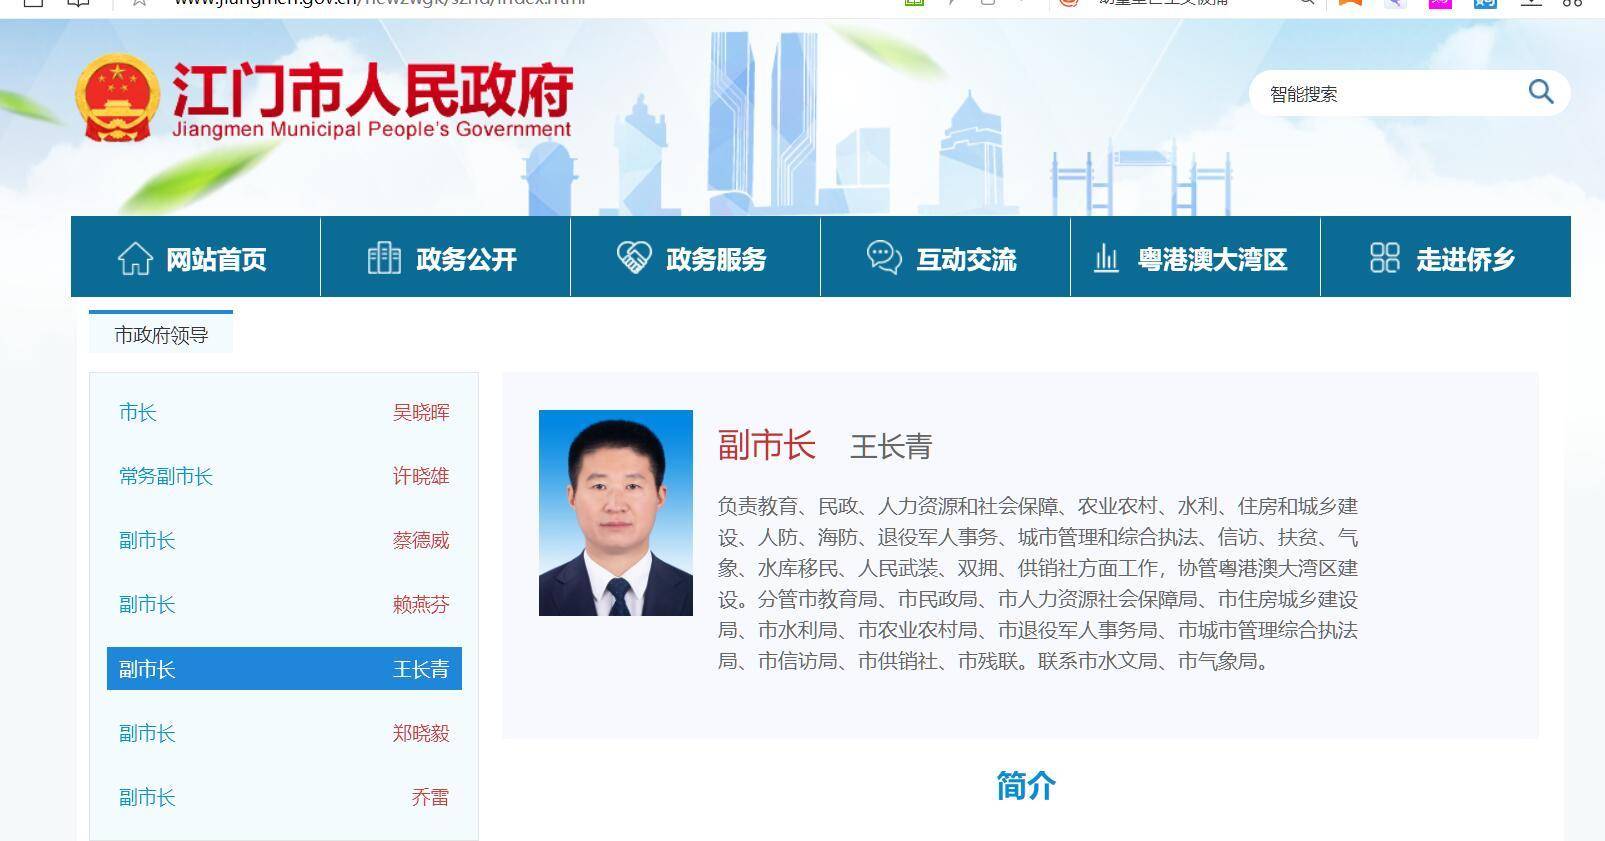 据江门市人民政府官网显示,2019年10月起,王长青任江门市副市长,市